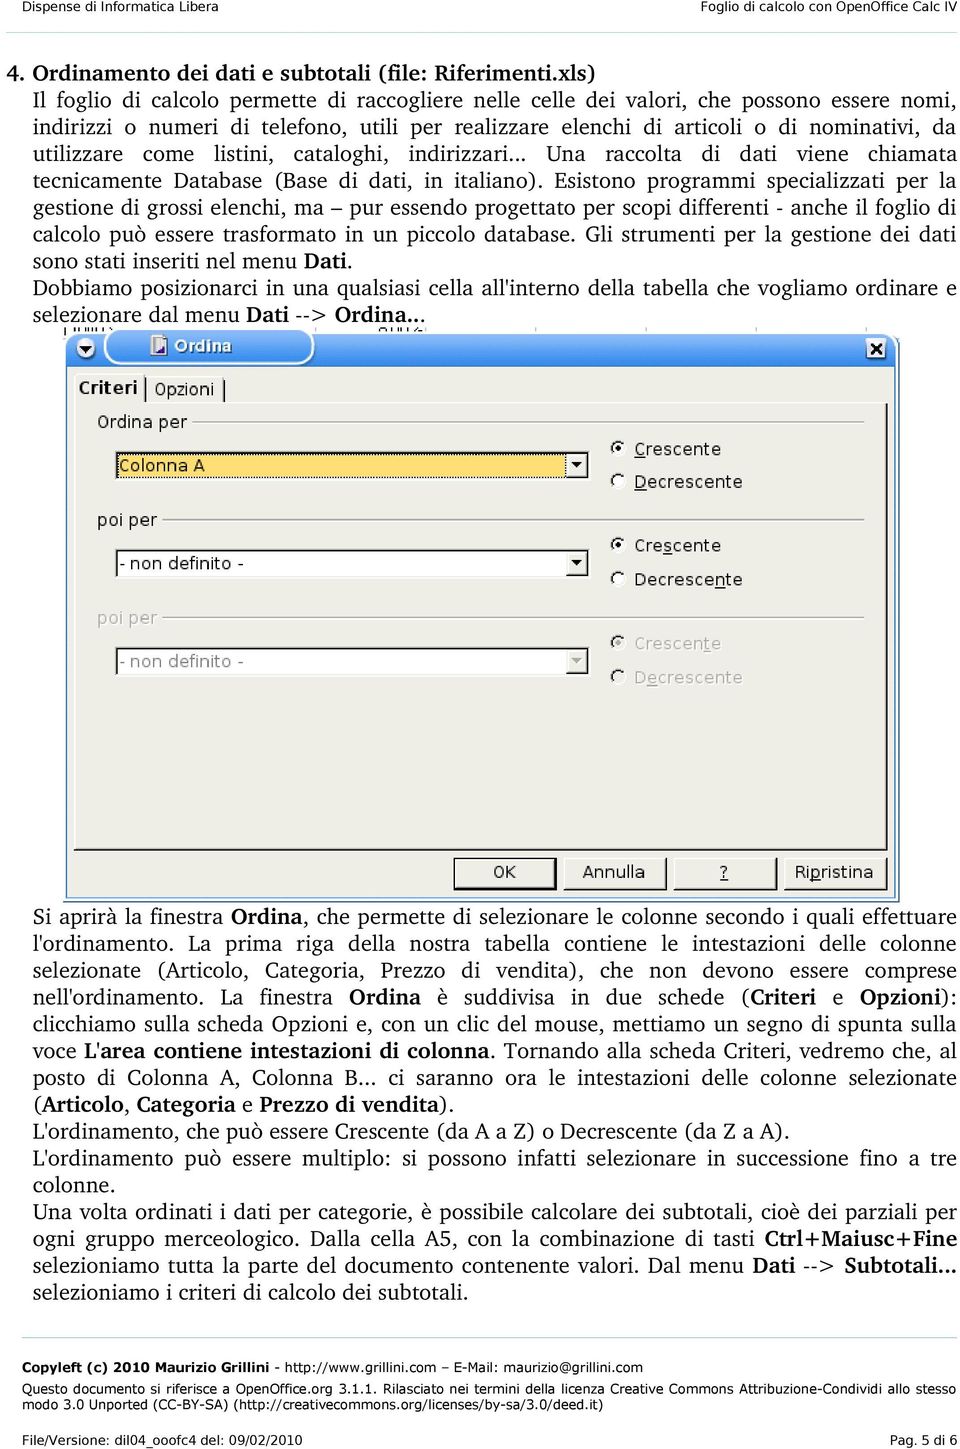 utilizzare come listini, cataloghi, indirizzari... Una raccolta di dati viene chiamata tecnicamente Database (Base di dati, in italiano).